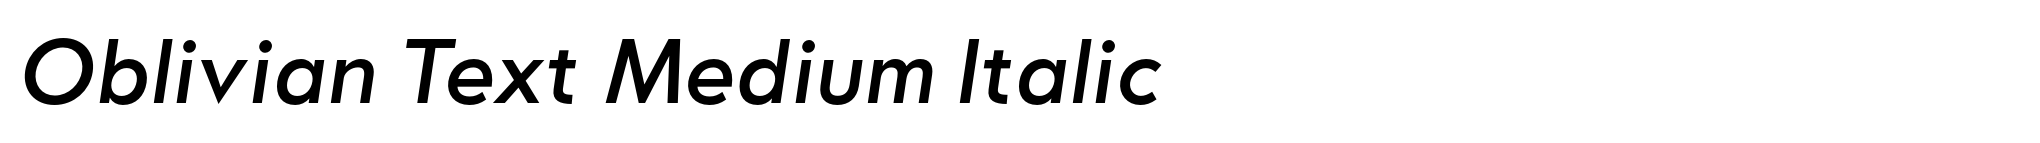 Oblivian Text Medium Italic image